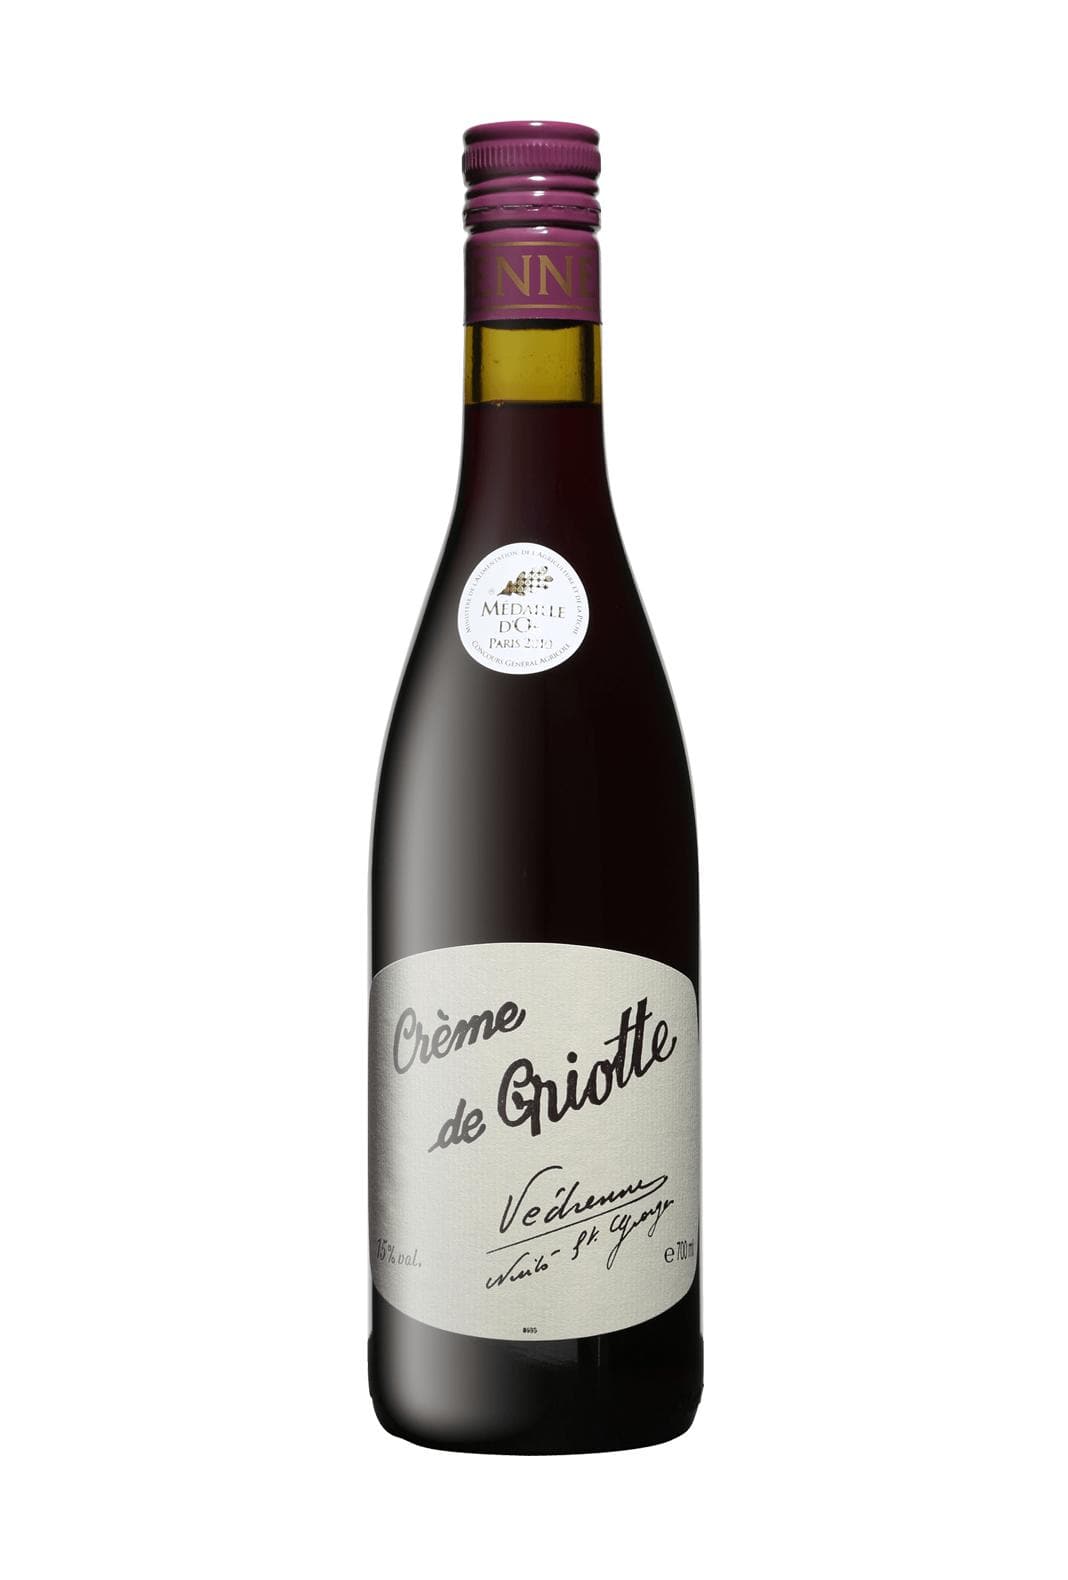 Vedrenne Liqueur Creme de Griotte (Morello Cherry) 15% 700ml | Liqueurs | Shop online at Spirits of France